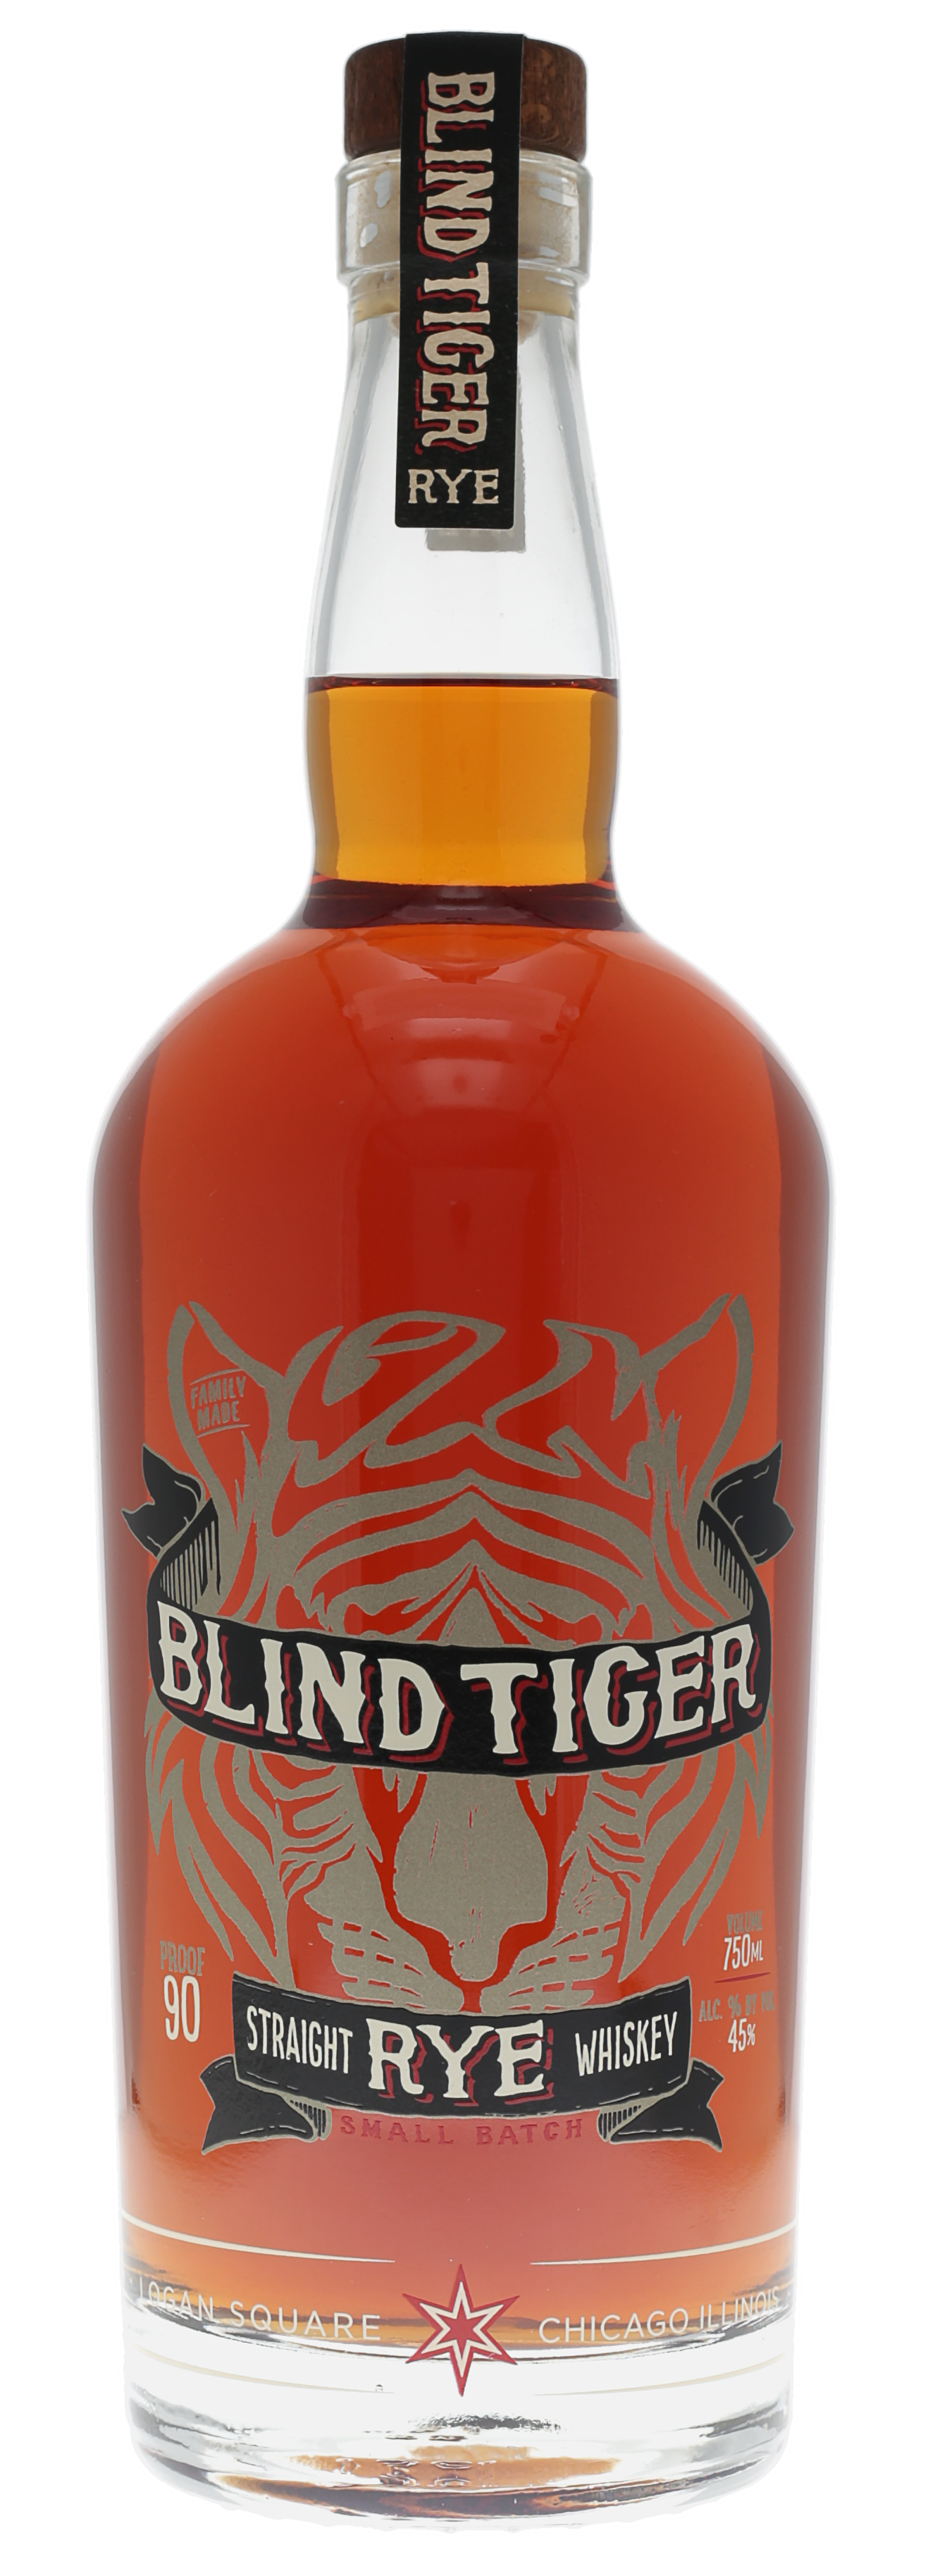 Blind Tiger Rye Whiskey